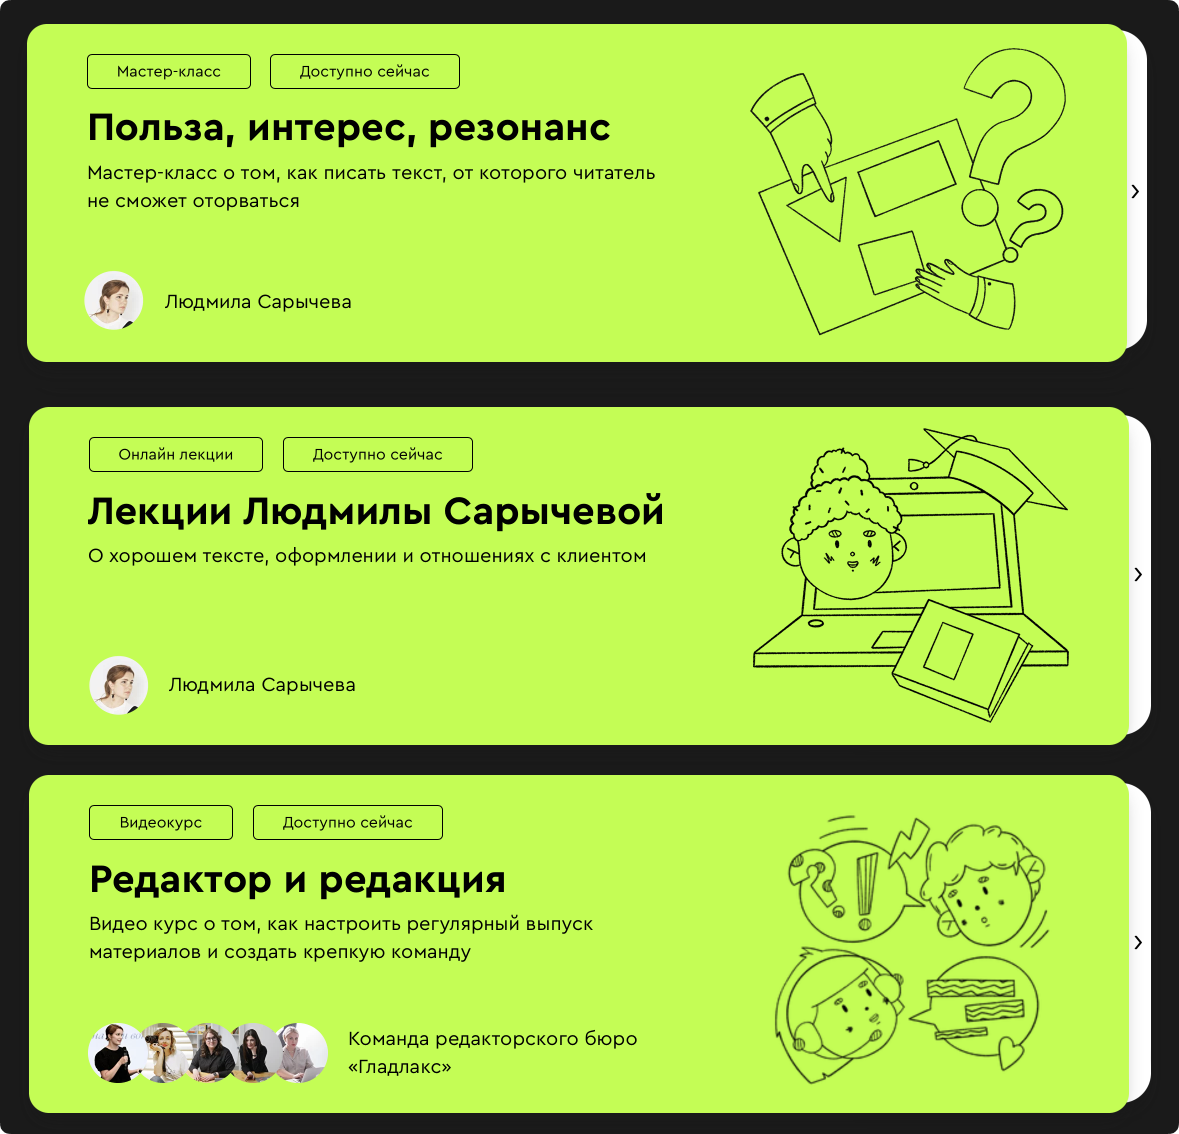 Скриншот сайта компании «Базилик» с образовательными продуктами Людмилы Сарычевой